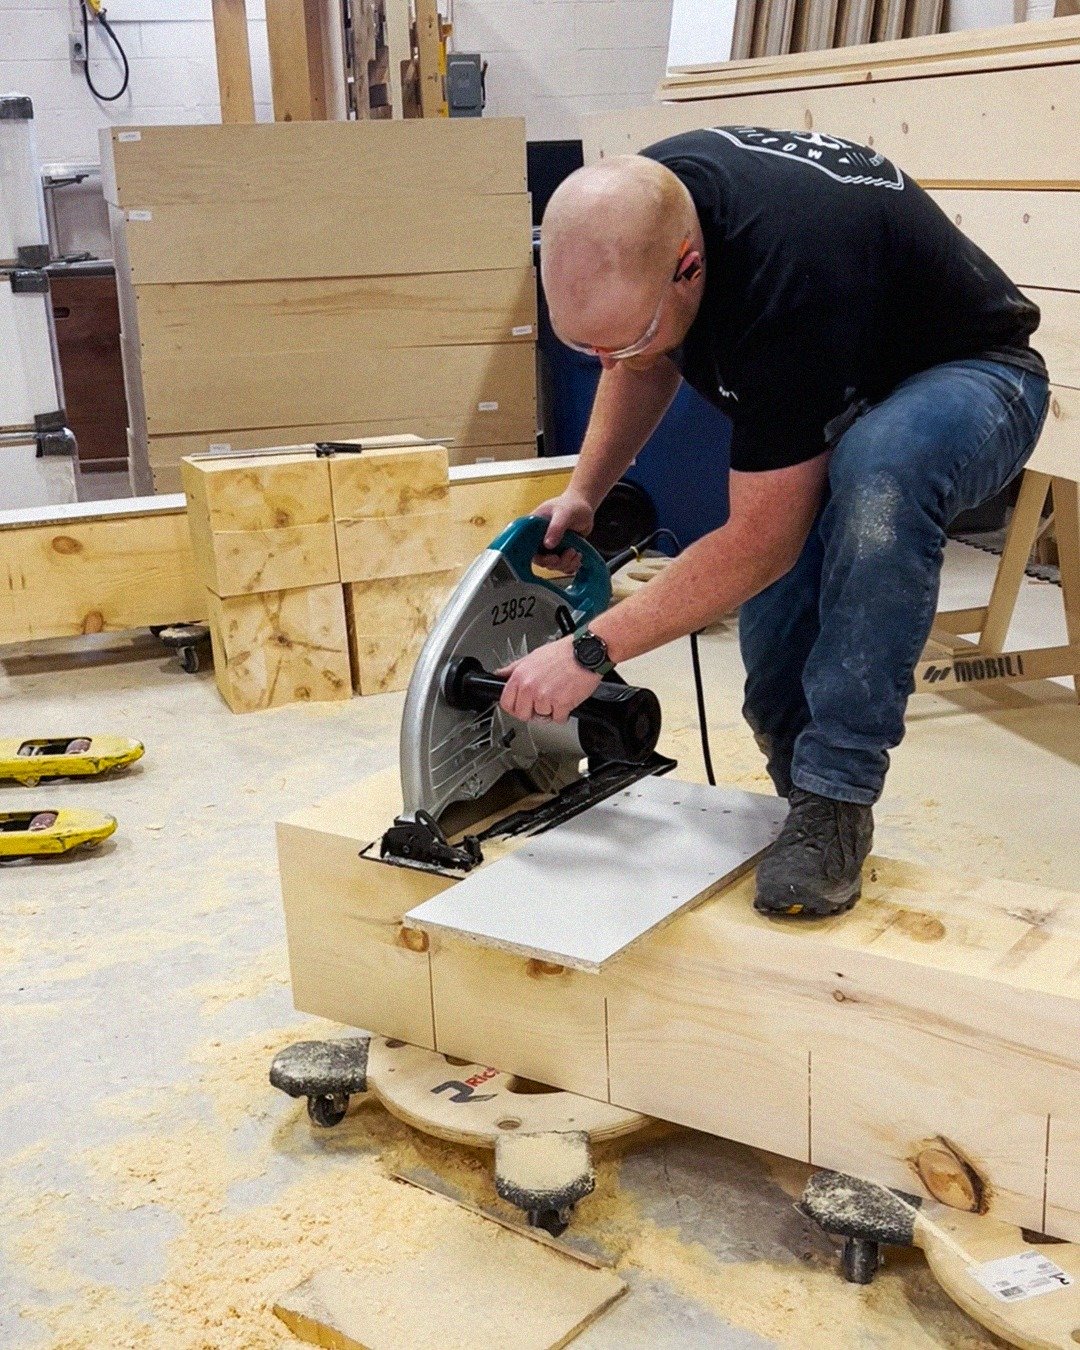 Nous avons d&ucirc; sortir l'artillerie lourde pour travailler sur ce projet de base de lit sur mesure! 🪚

#shop #furnituredesign #decor #mobilier #mobili #quebec #tools #woodworking #wood #furniture #woodshop #makita #skillsaw